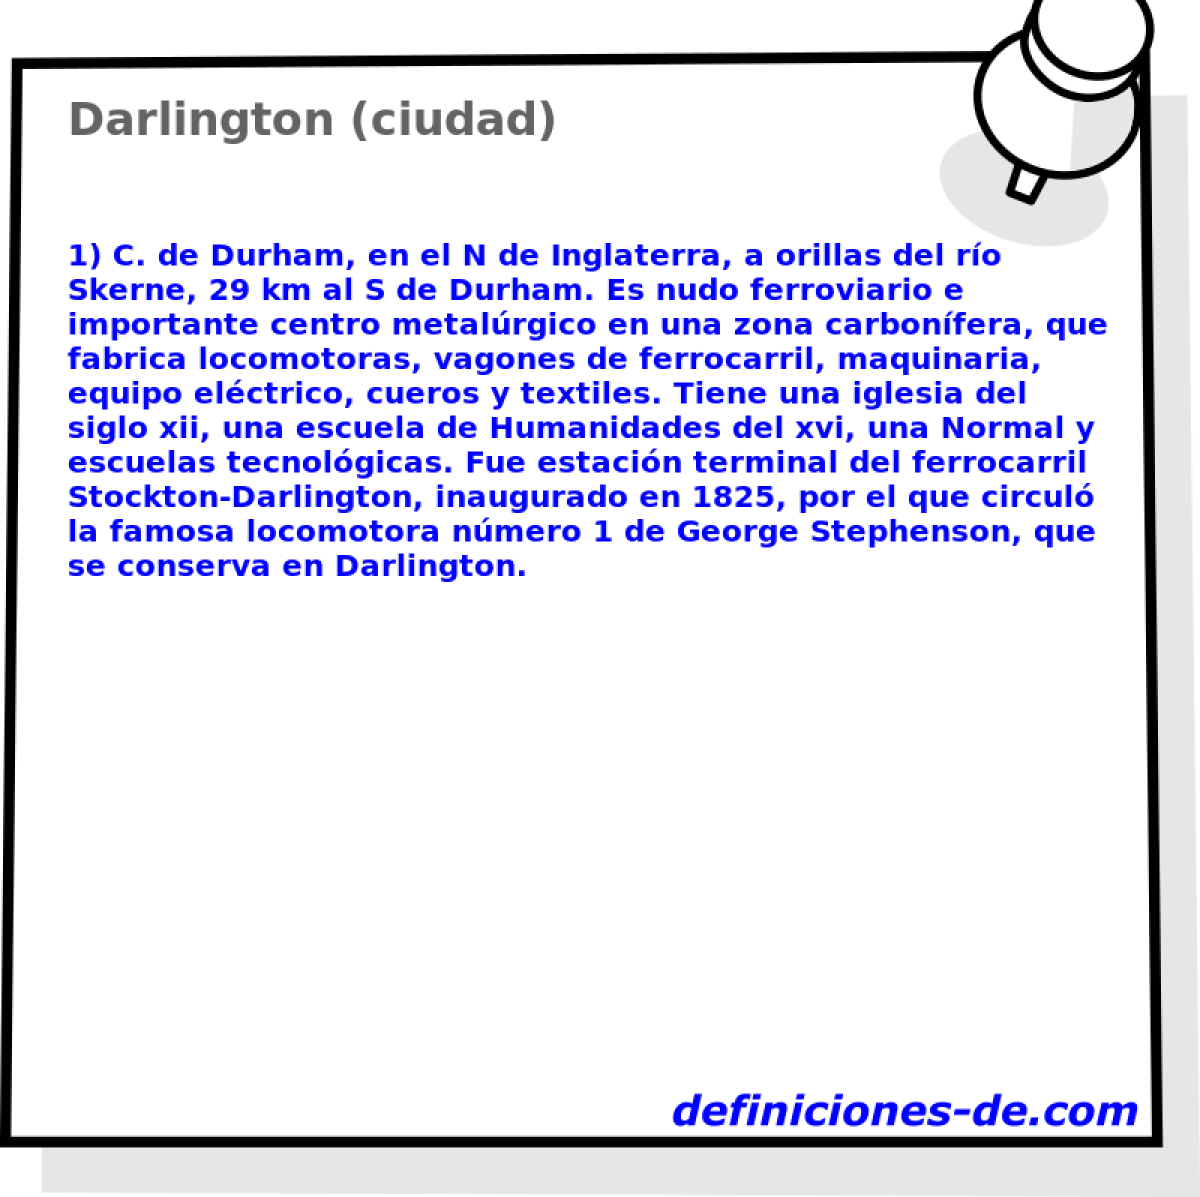 Darlington (ciudad) 